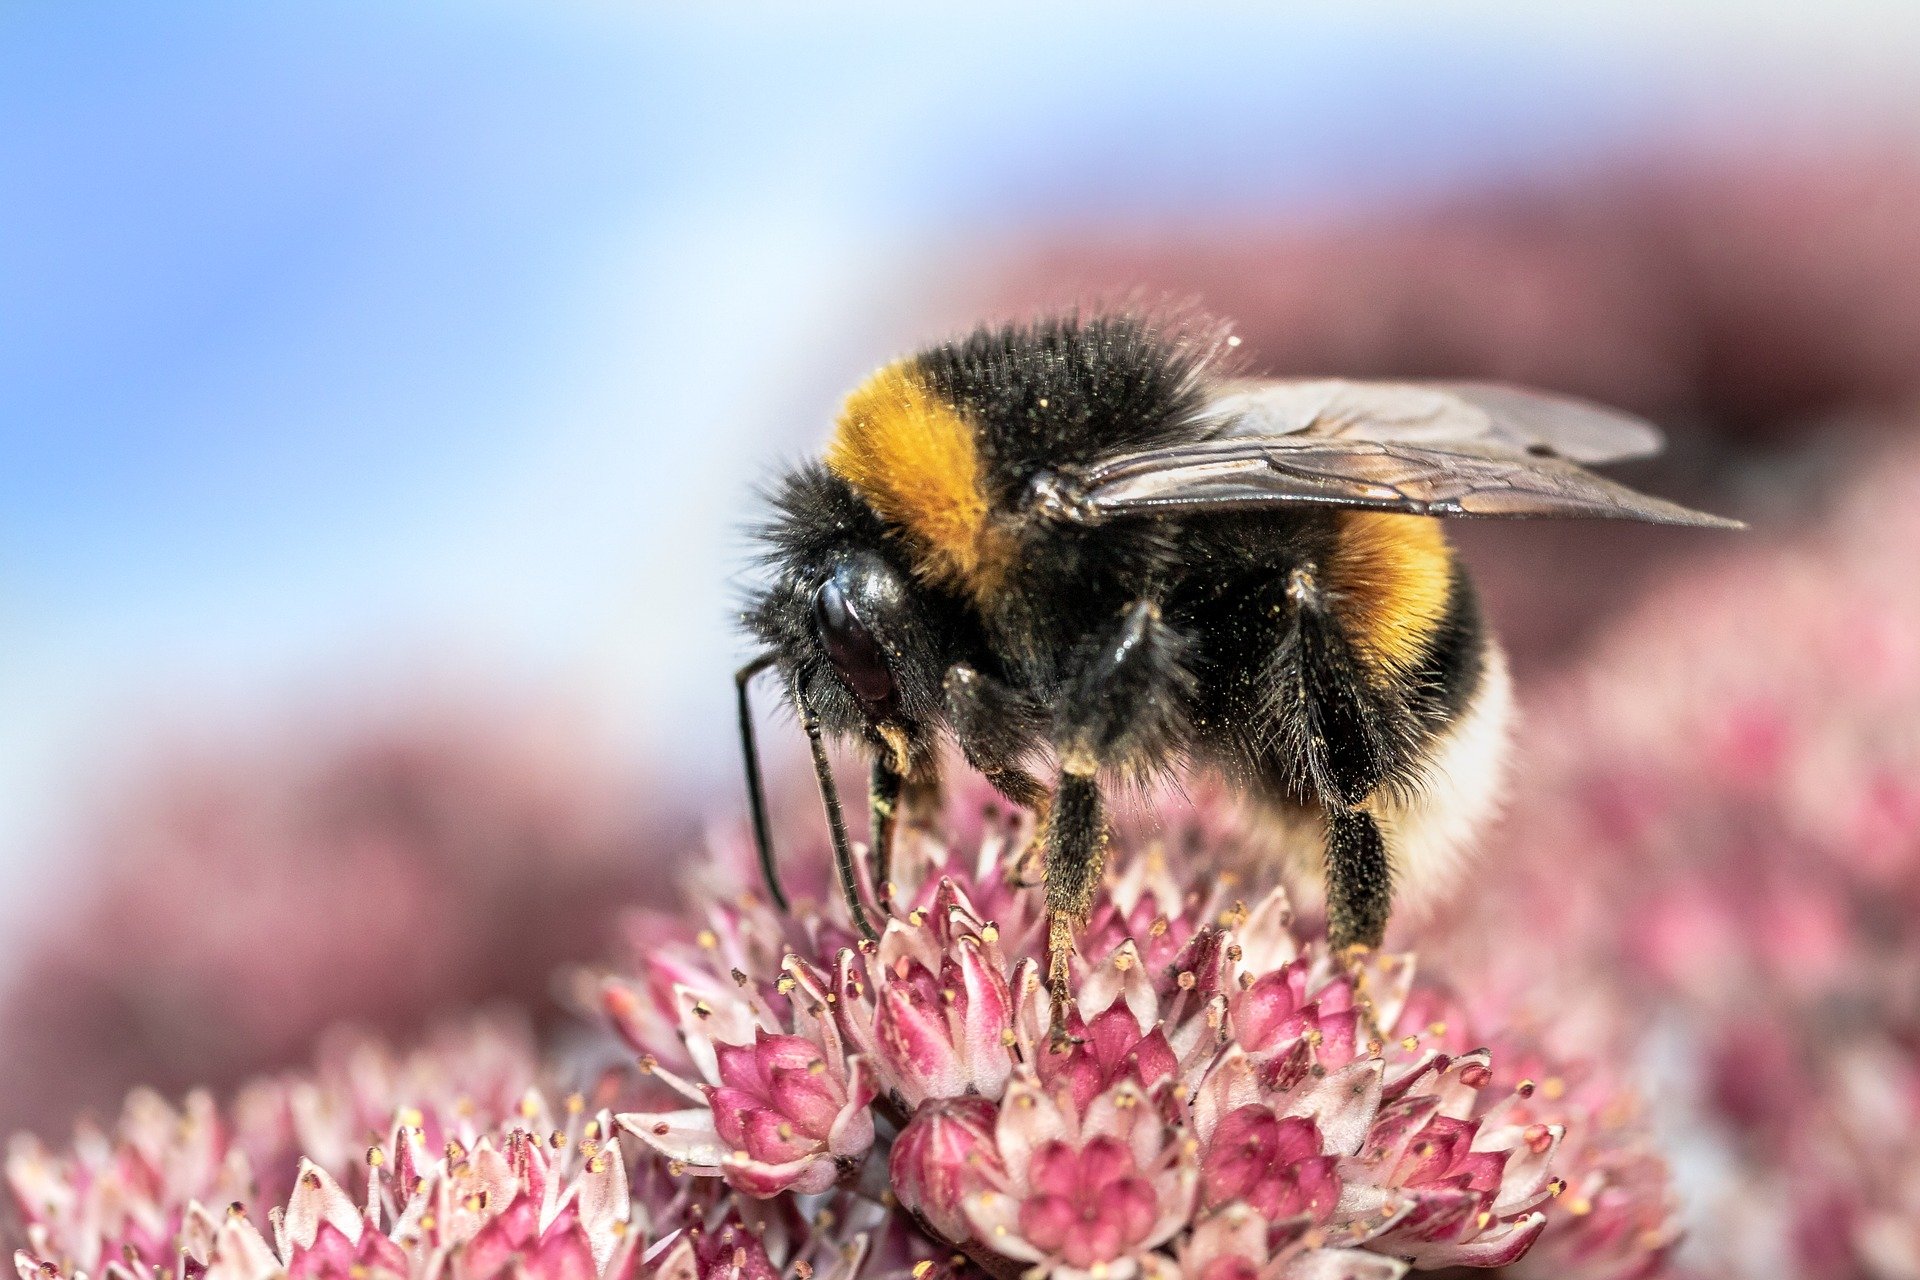 Artikel: Hummeln beschädigen Pflanzenblätter und beschleunigen die Blütenproduktion bei Pollenknappheit